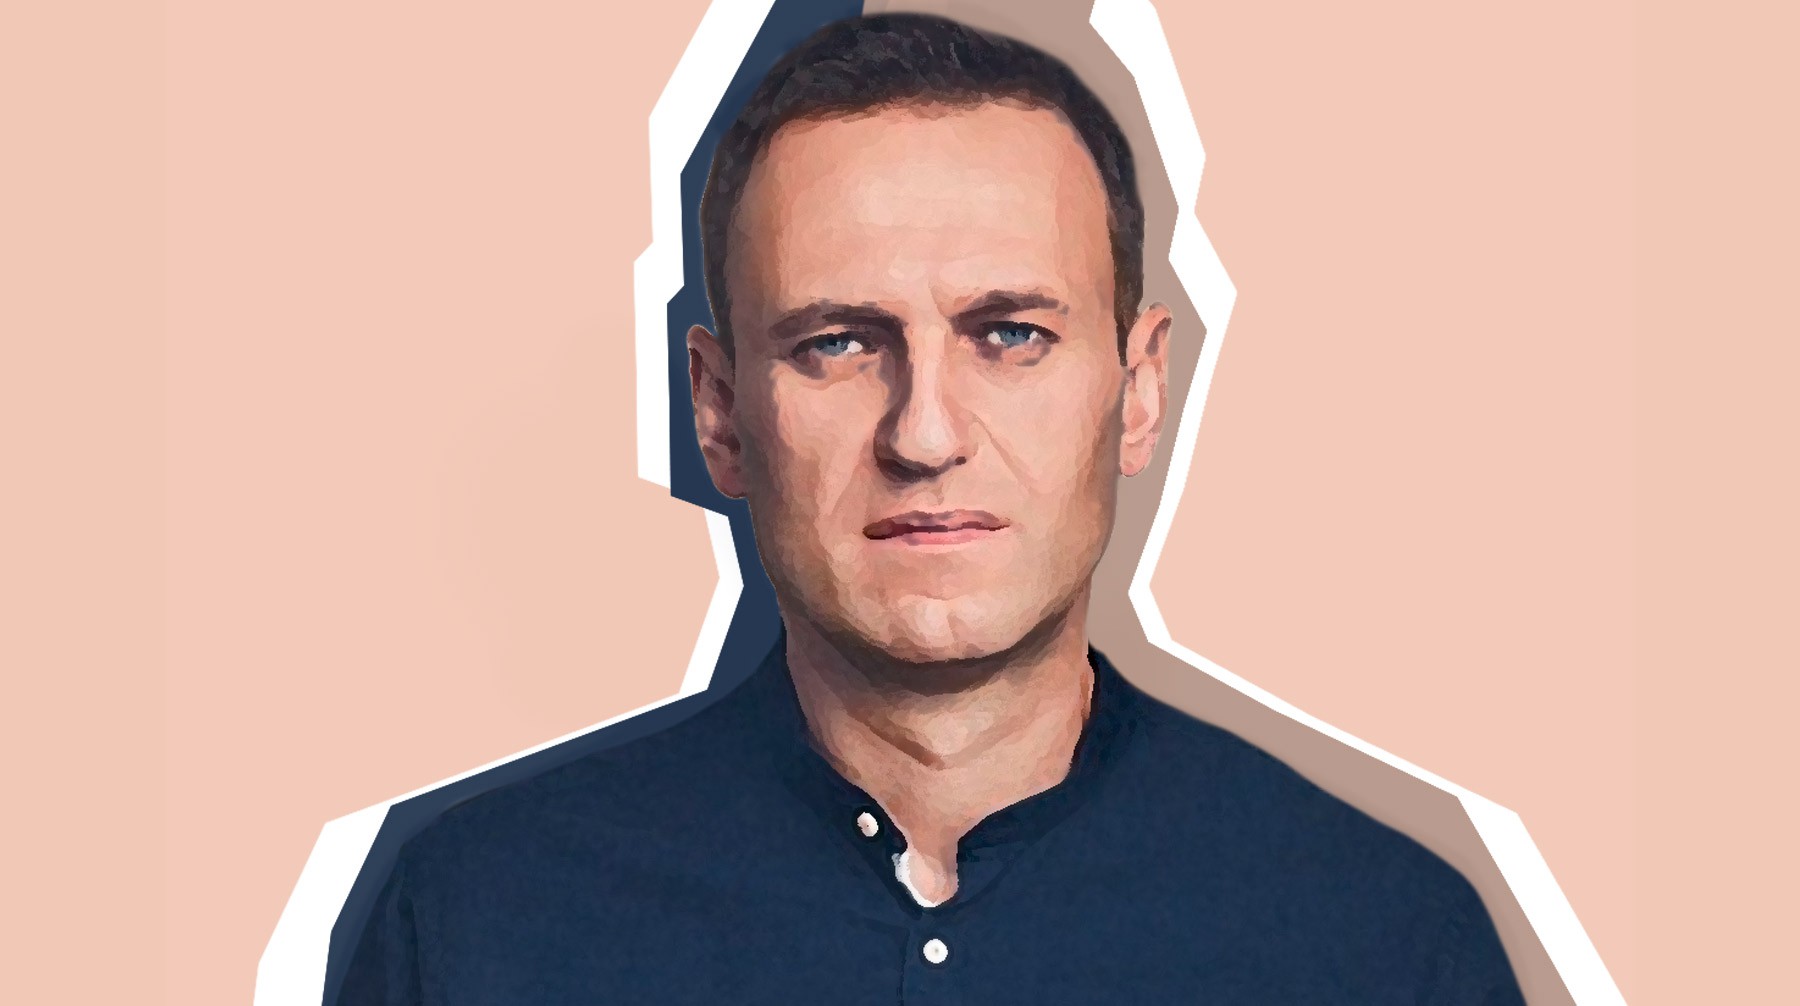 Dailystorm - За Навальным — никого